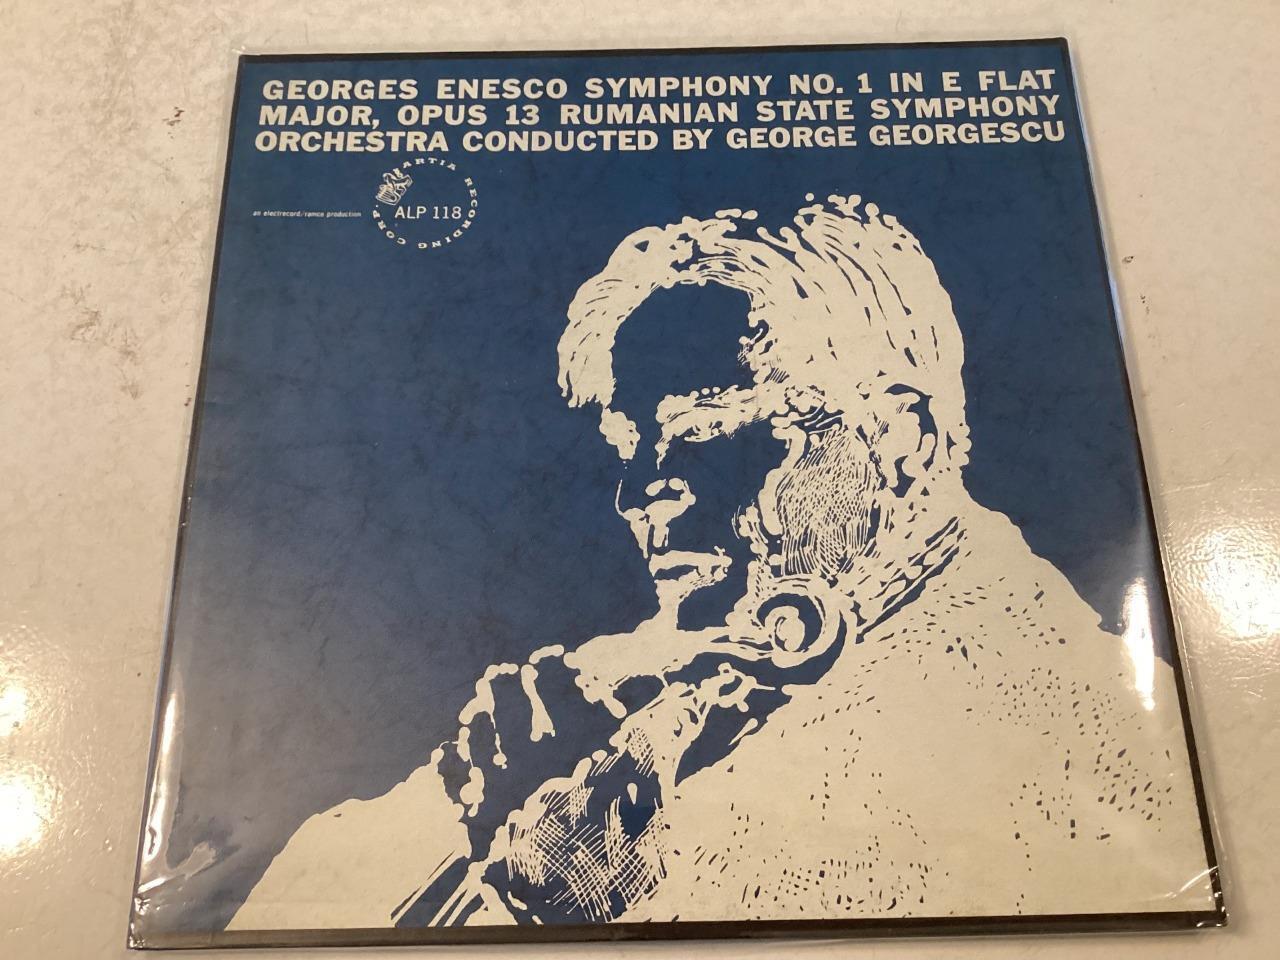 VINYL LP RECORD 1960S GEORGES ENESCO SYMPHONY NO 1 IN E FLAT